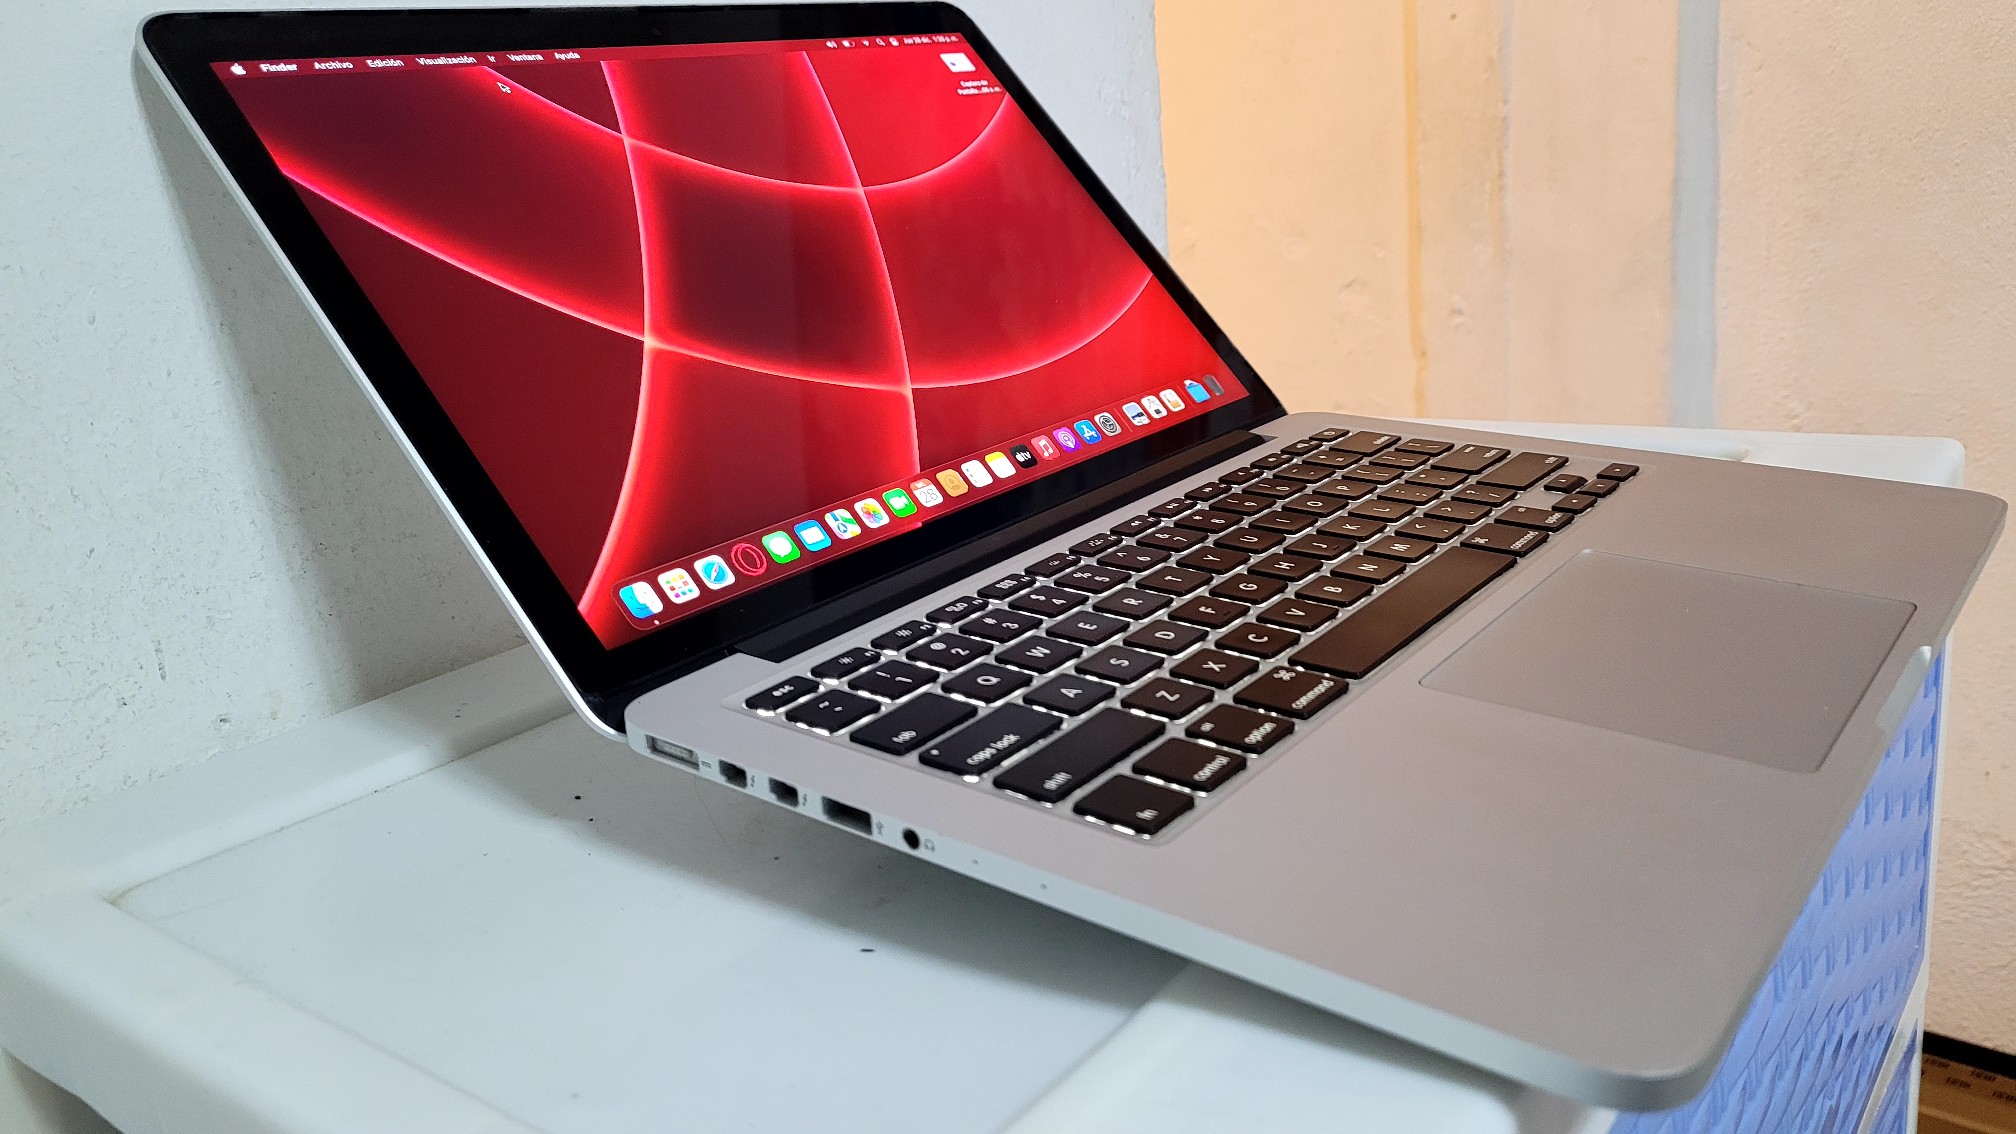 computadoras y laptops - Macbook Pro Retina 13.3 Pulg Core i7 Ram 16gb Disco 256gb SSD Solido 2016 1